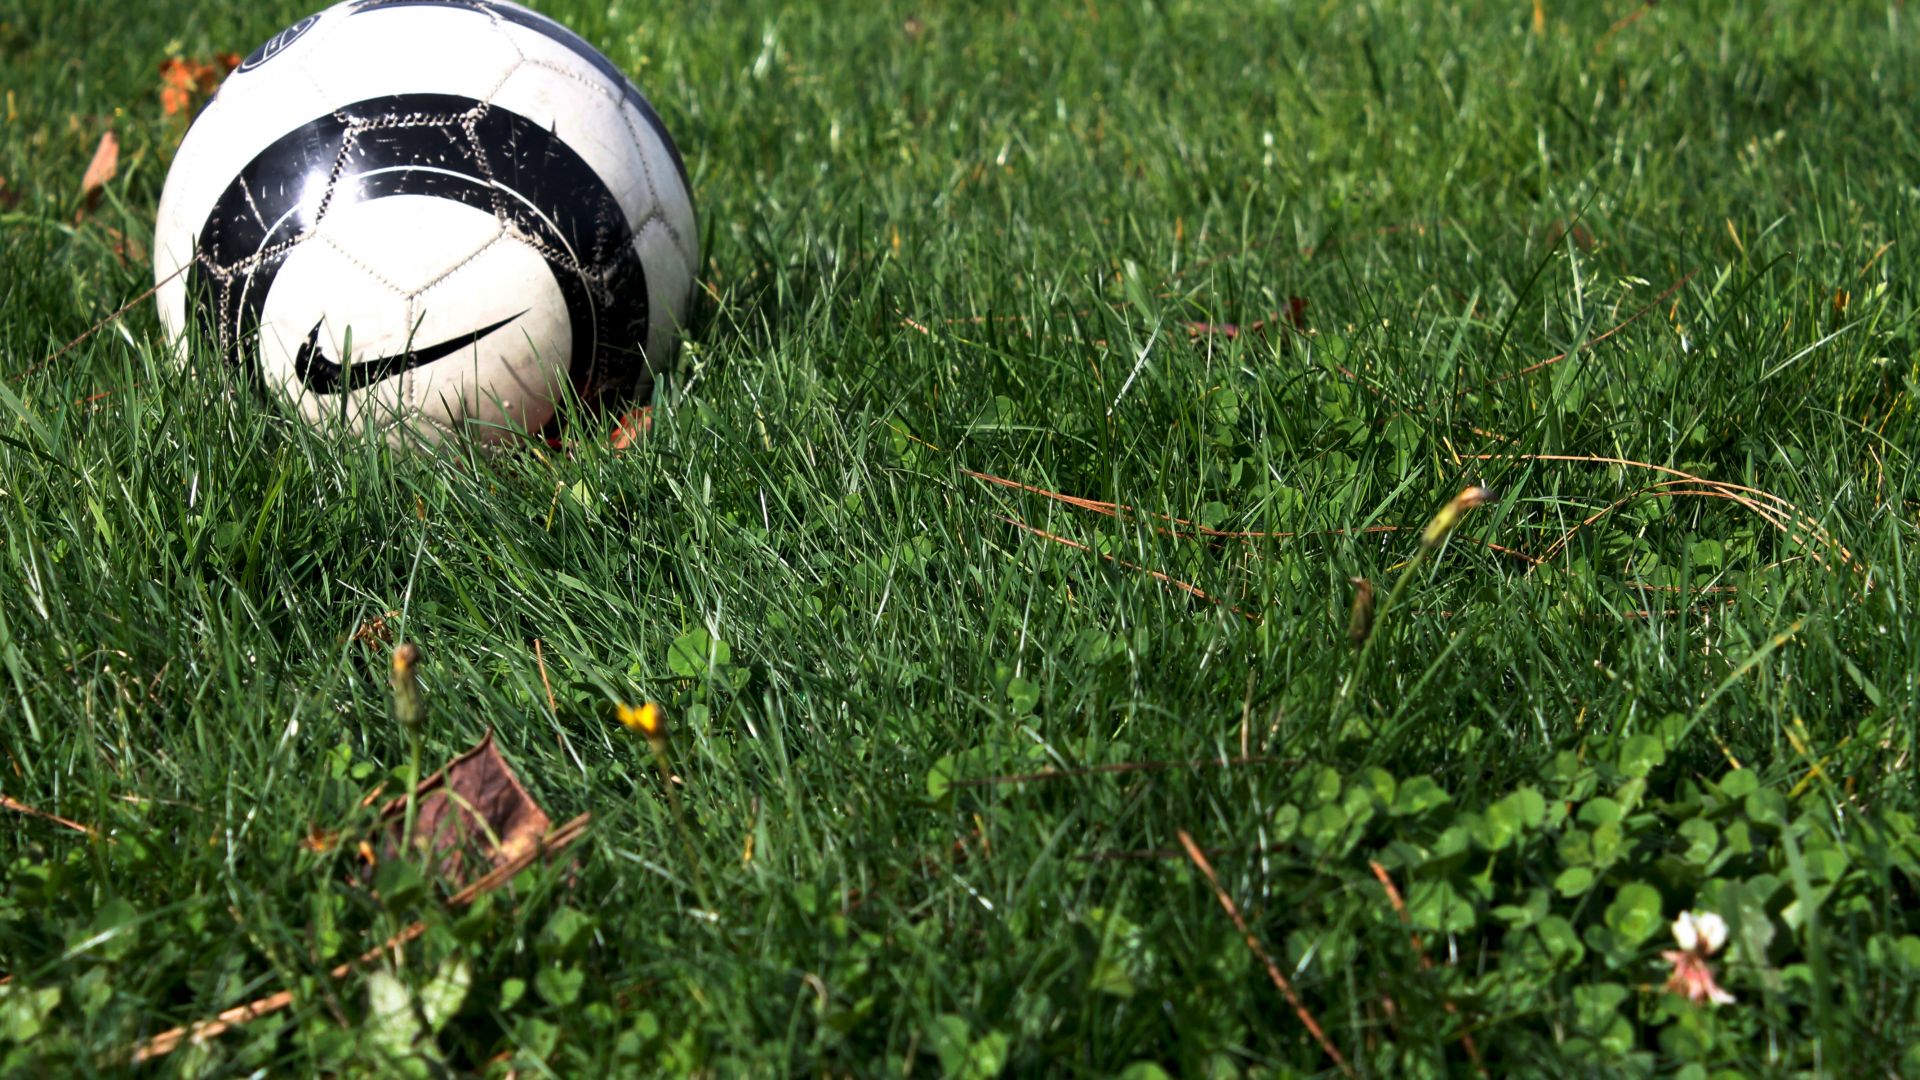 Wallpaper nike Soccer ball, grass field